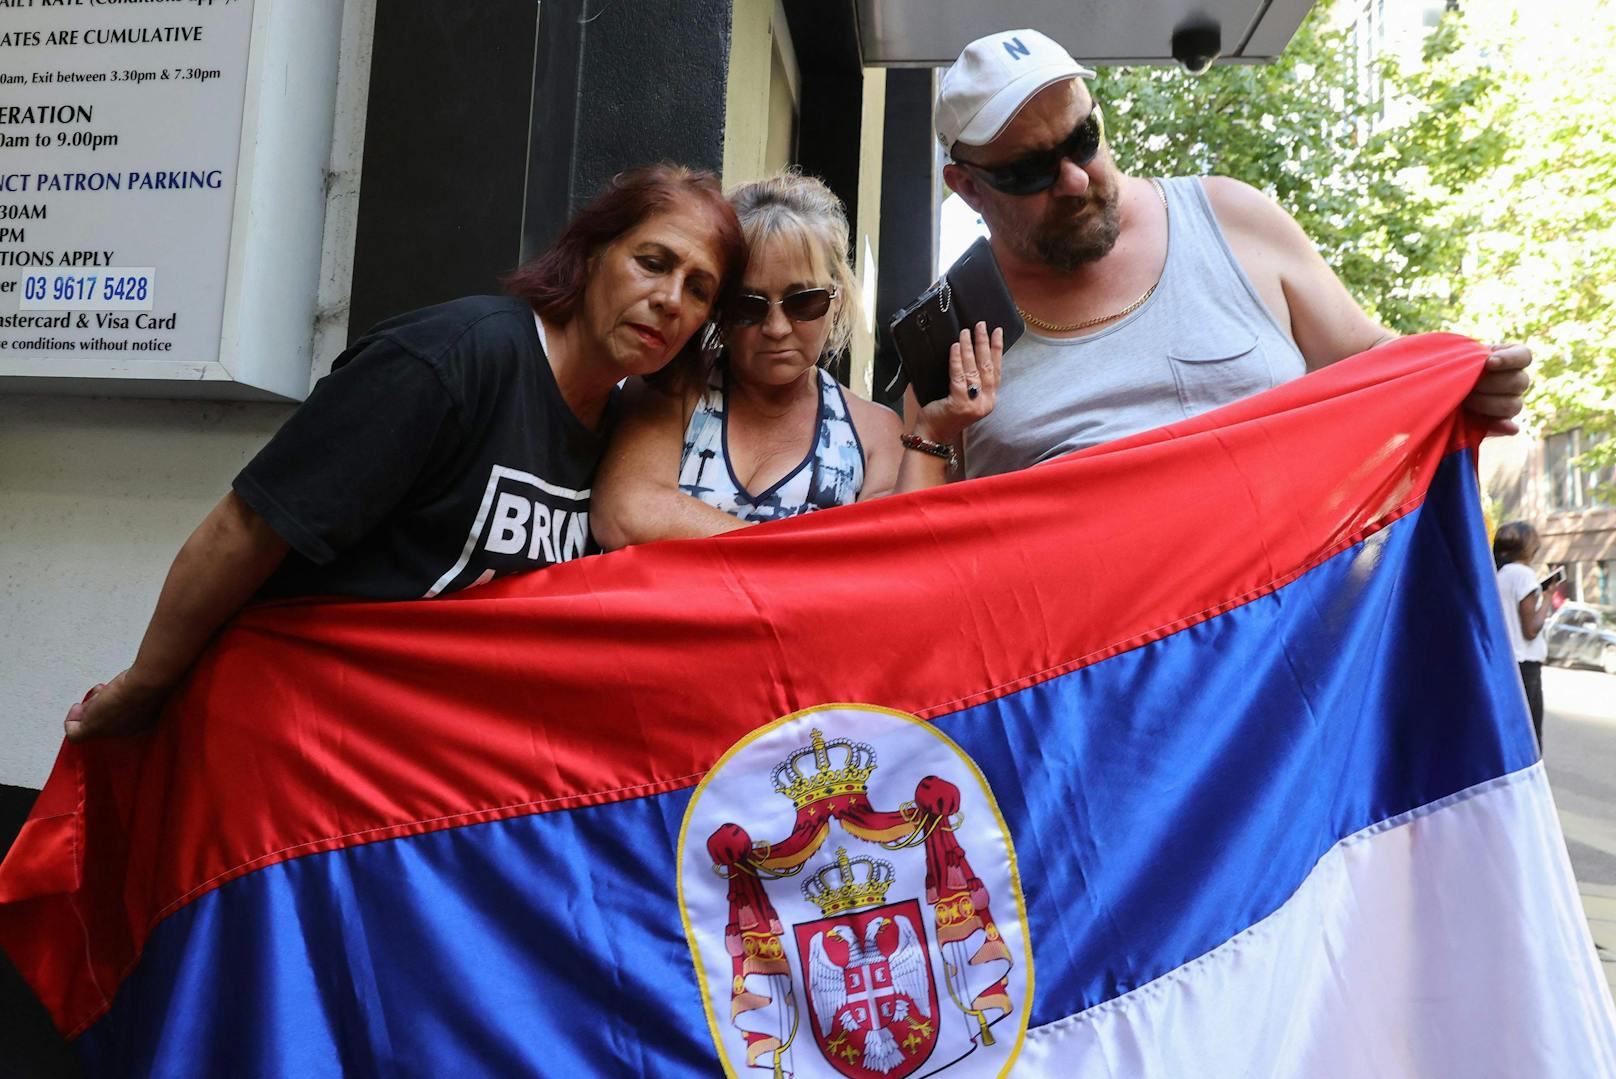 Fans des Serben waren nach dem Urteil schwer enttäuscht.